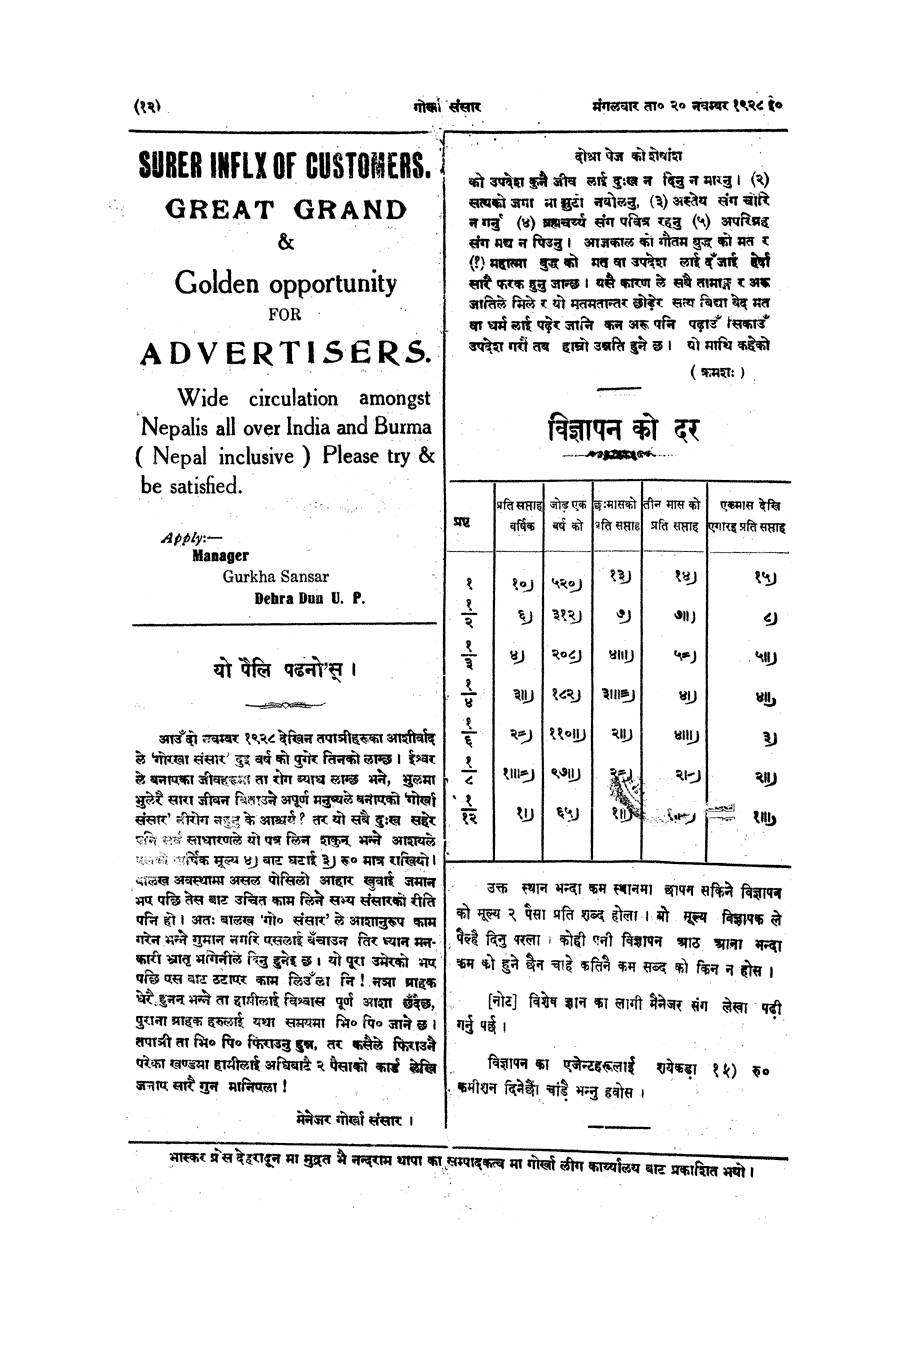 Gorkha Sansar, 20 Nov 1928, page 12